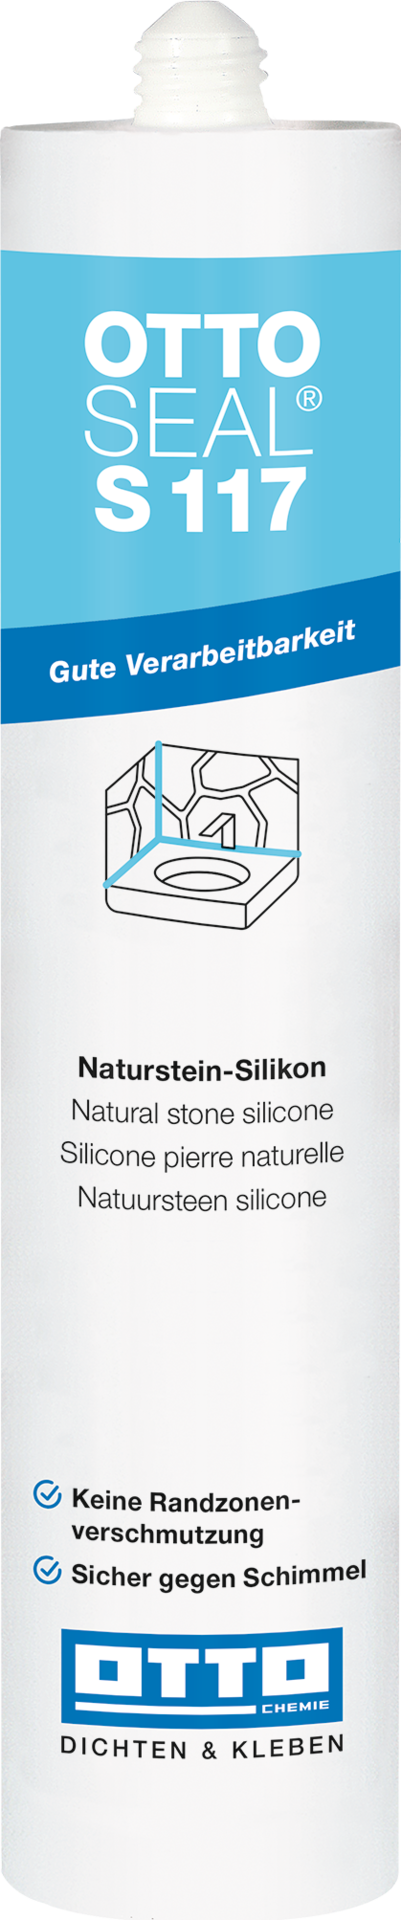 OTTOSEAL S117 Das Naturstein Silikon 1K-Silikon-Dichtstoff Oxim-Basis neutral vernetzend innen außen